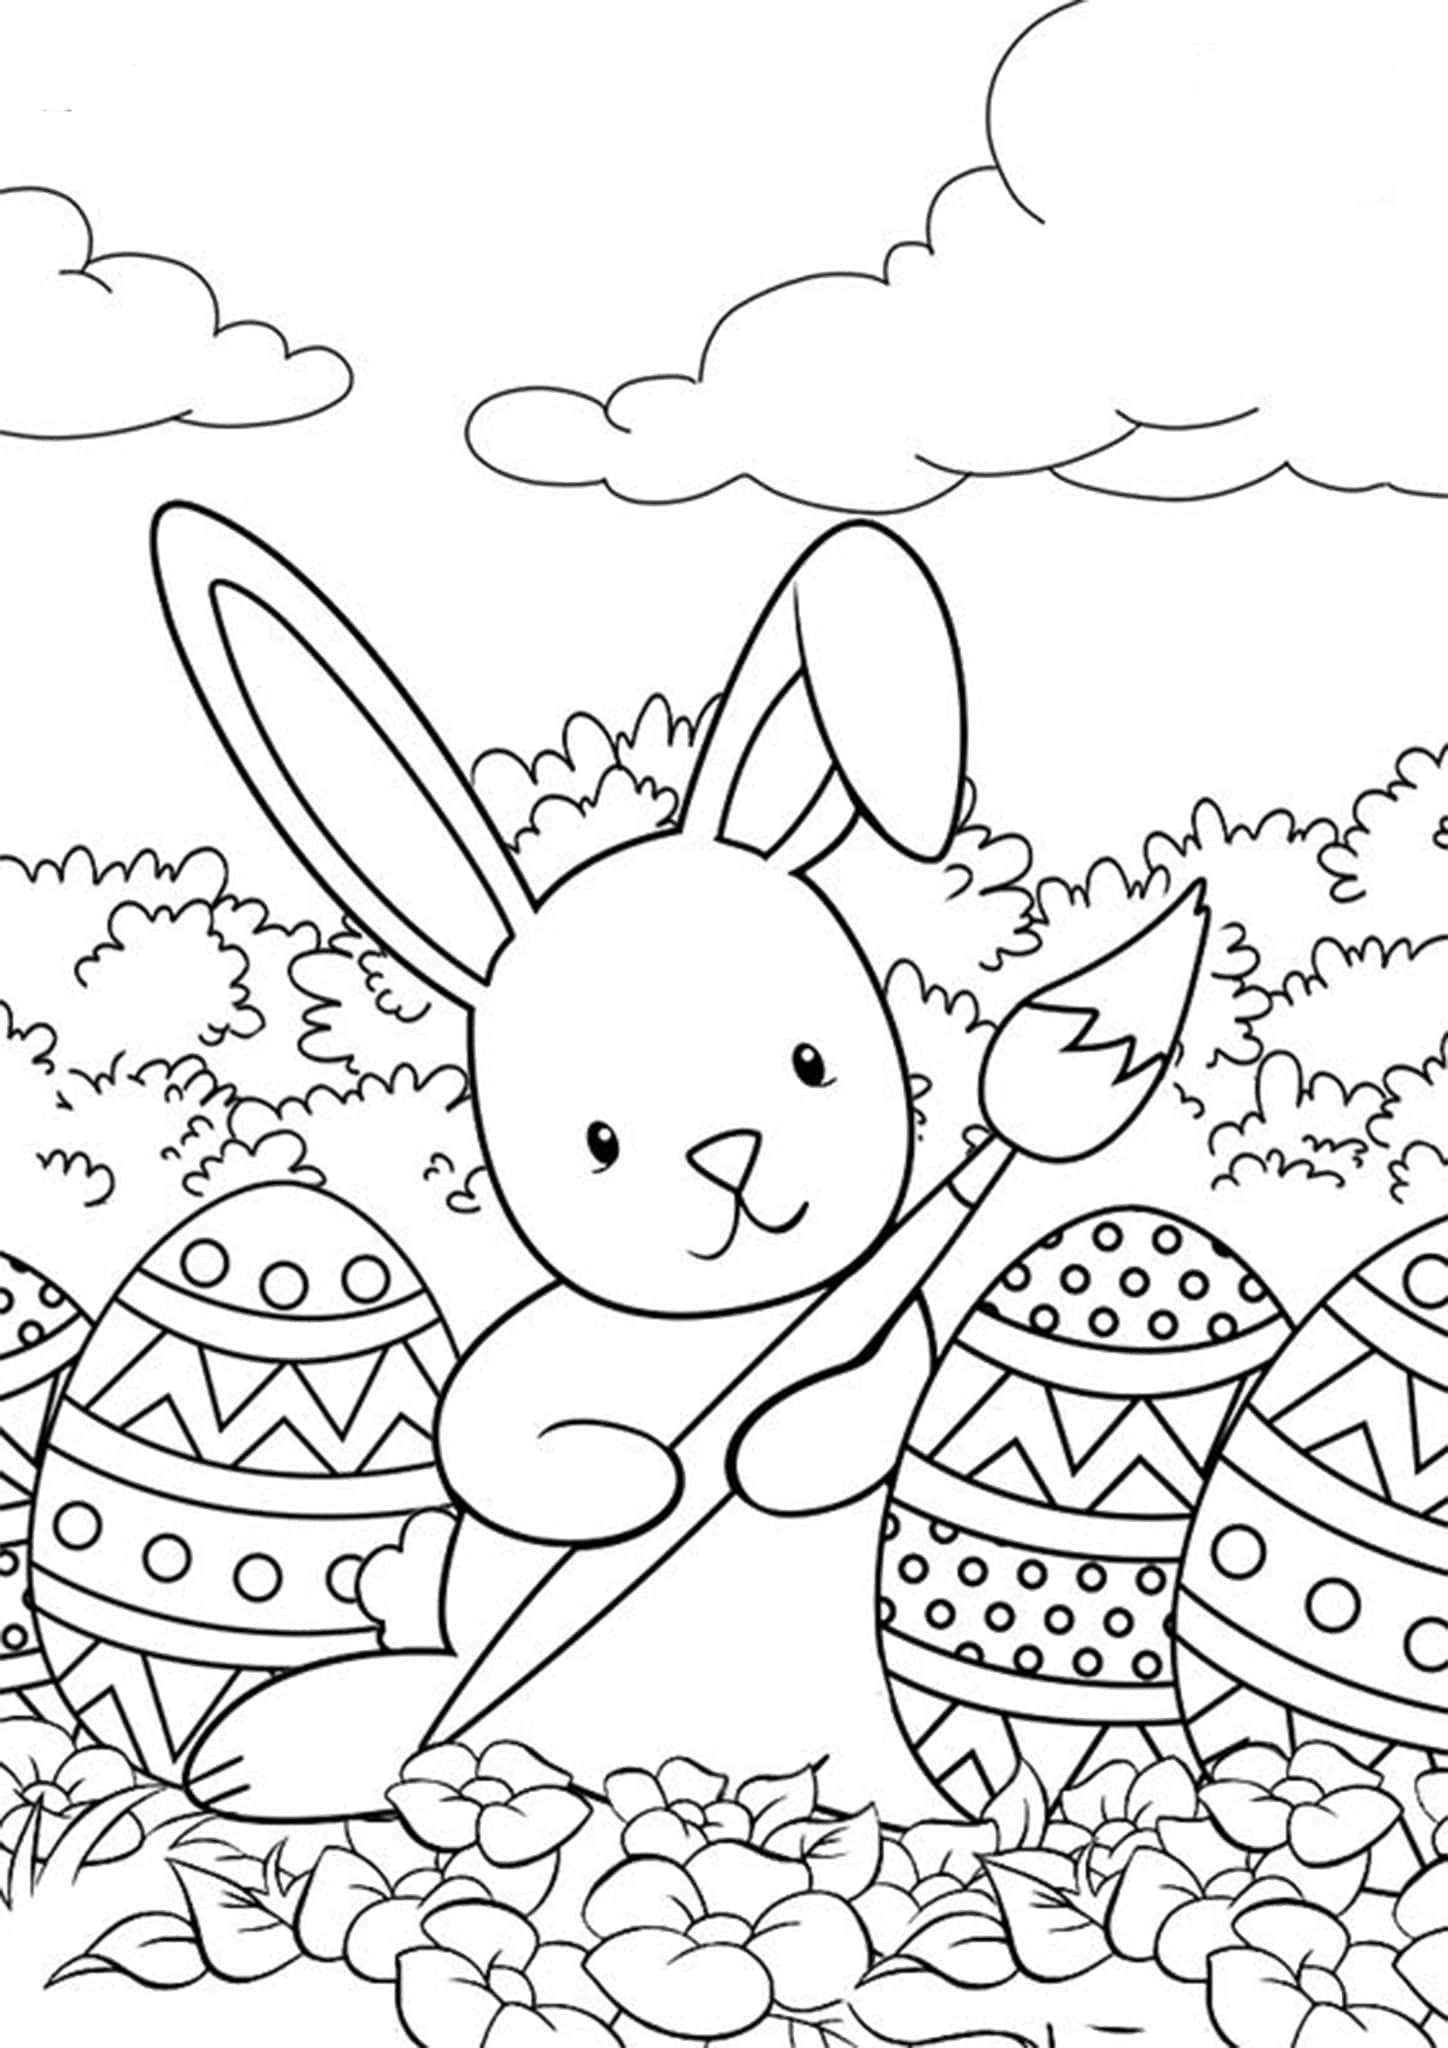 Раскрашиваем пасхальные. Раскраска Пасха. Раскраски пасхальные для детей. Пасхальное яйцо раскраска. Пасхальный кролик раскраска.